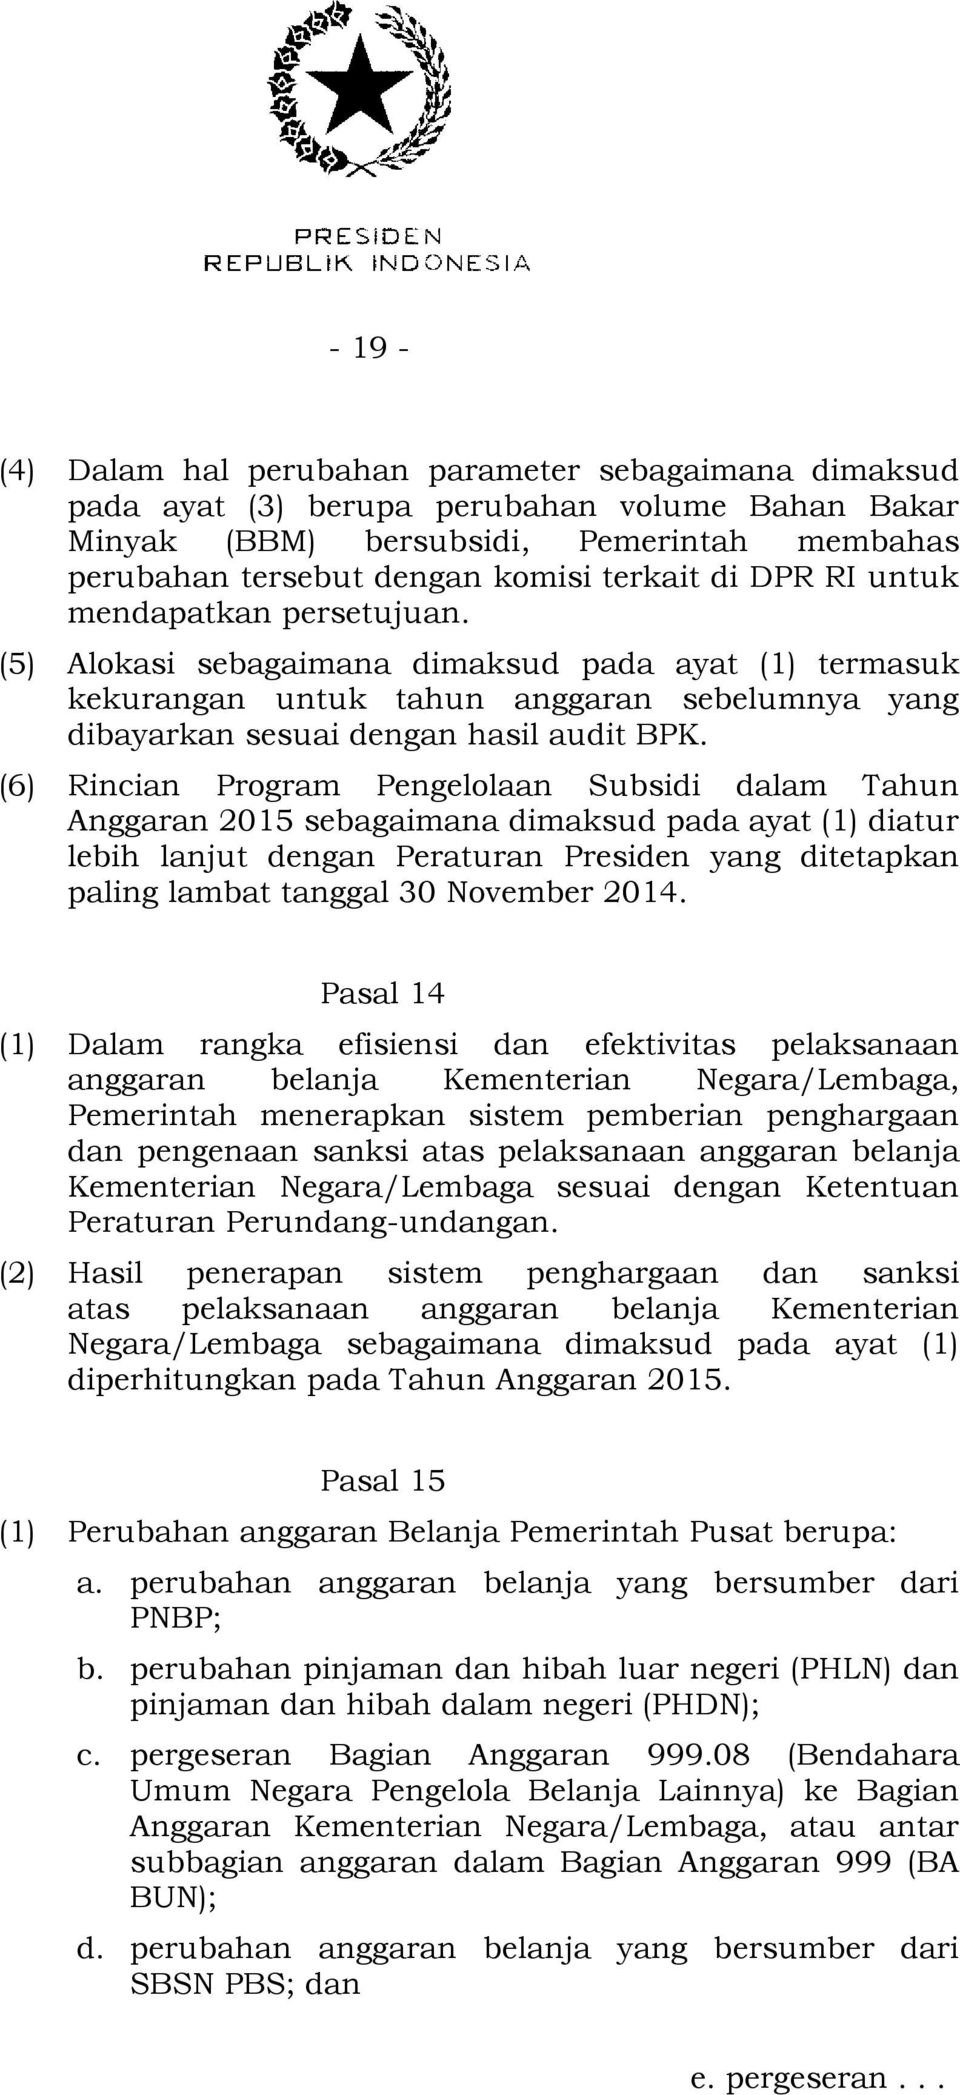 (6) Rincian Program Pengelolaan Subsidi dalam Tahun Anggaran 2015 sebagaimana dimaksud pada ayat (1) diatur lebih lanjut dengan Peraturan Presiden yang ditetapkan paling lambat tanggal 30 November